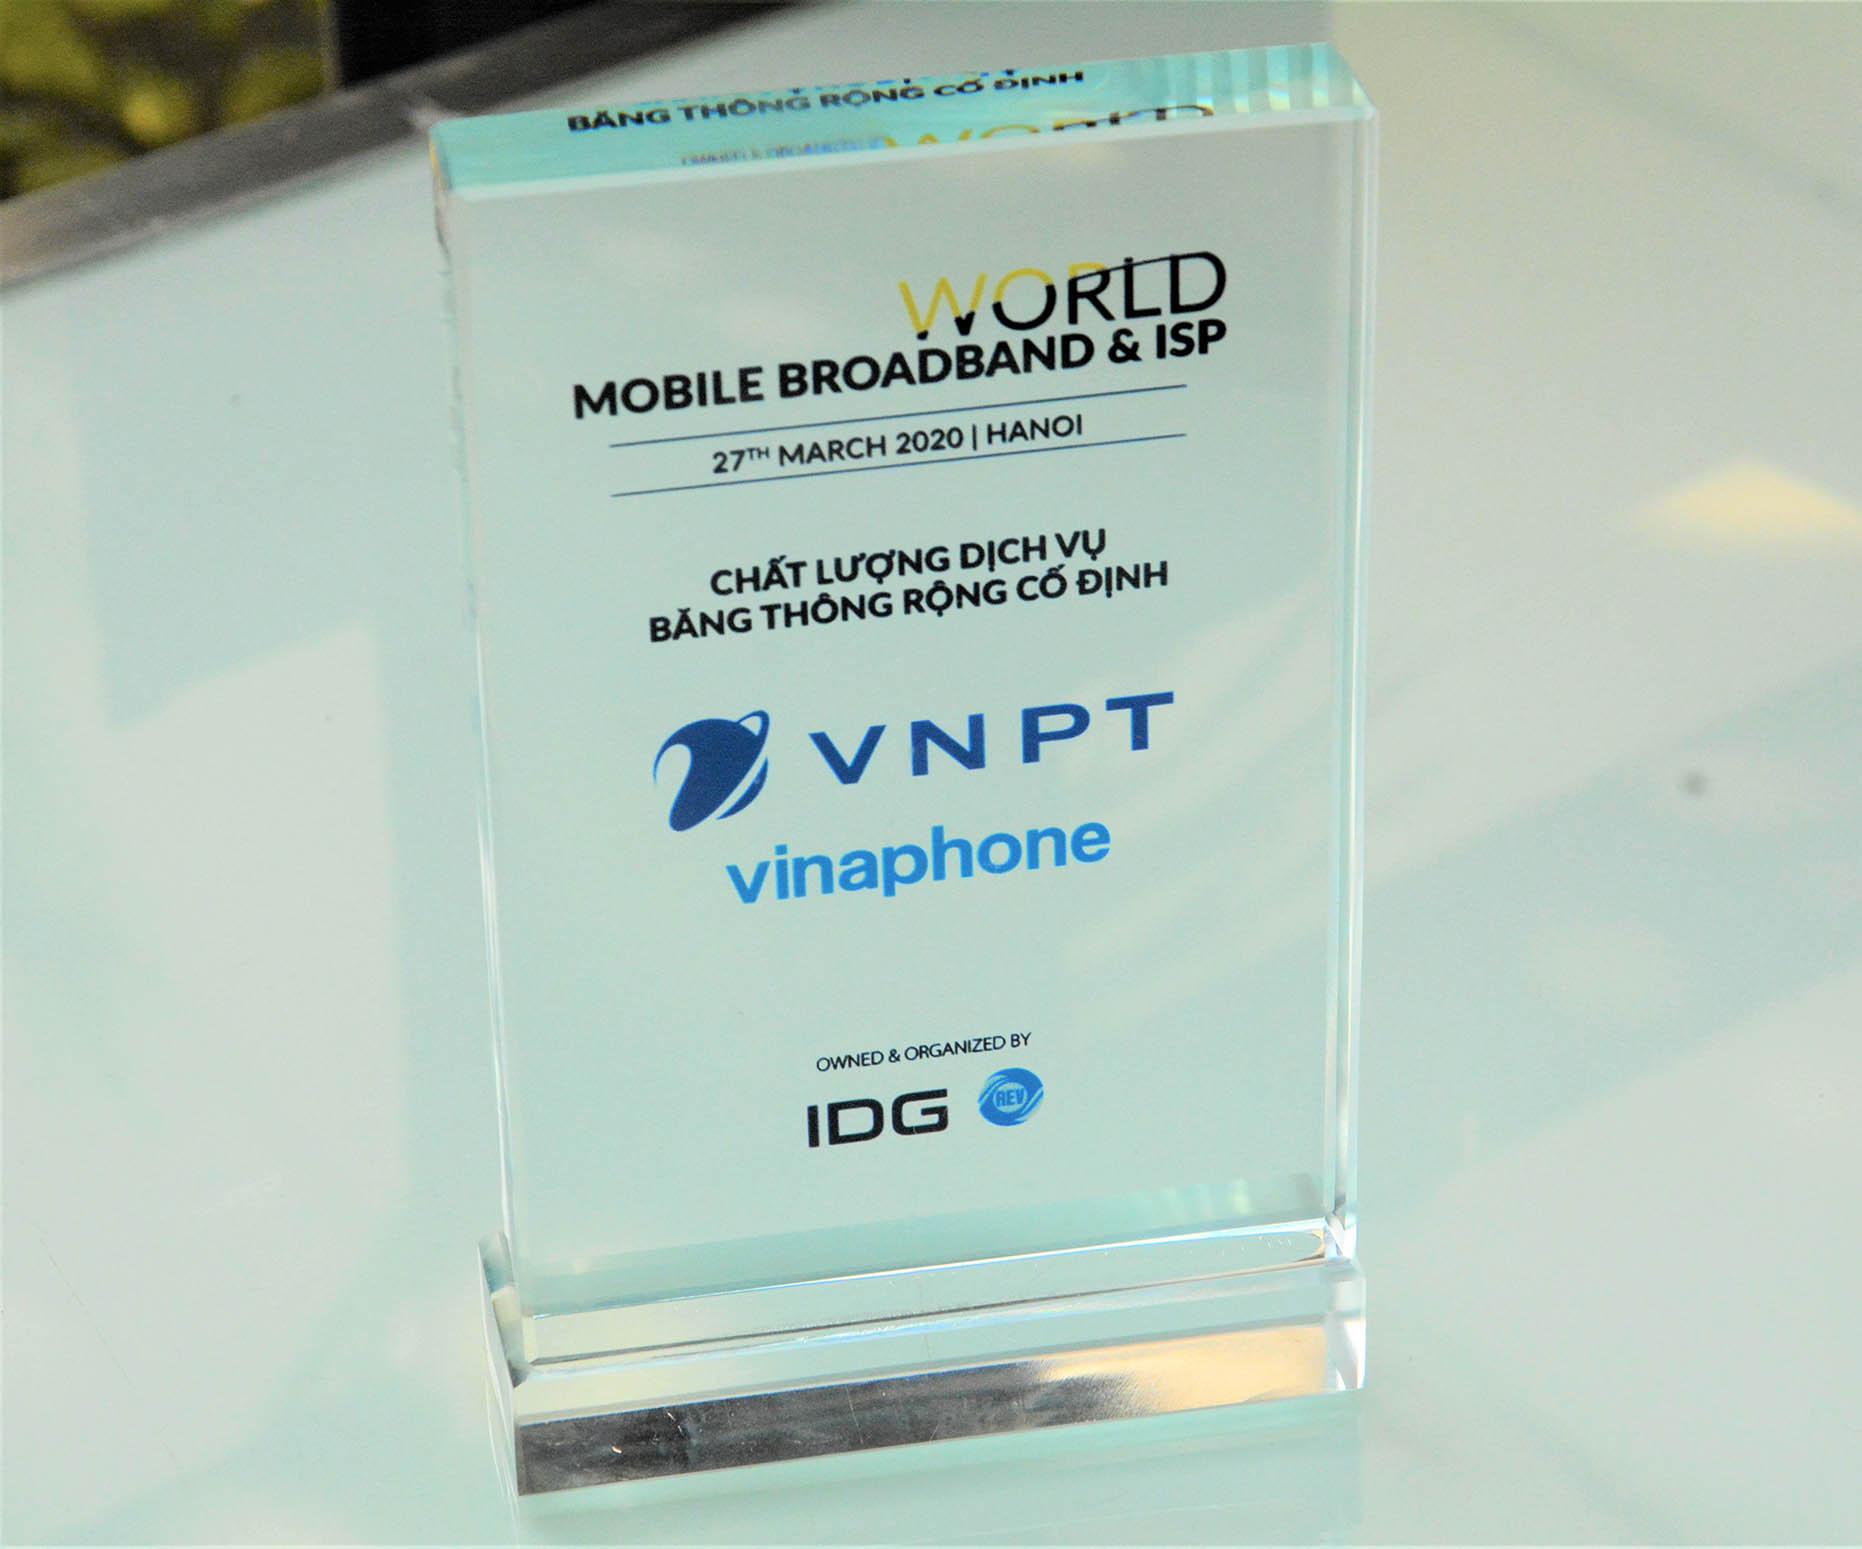 VNPT là đơn vị có chất lượng dịch vụ băng thông rộng cố định tốt nhất Việt Nam